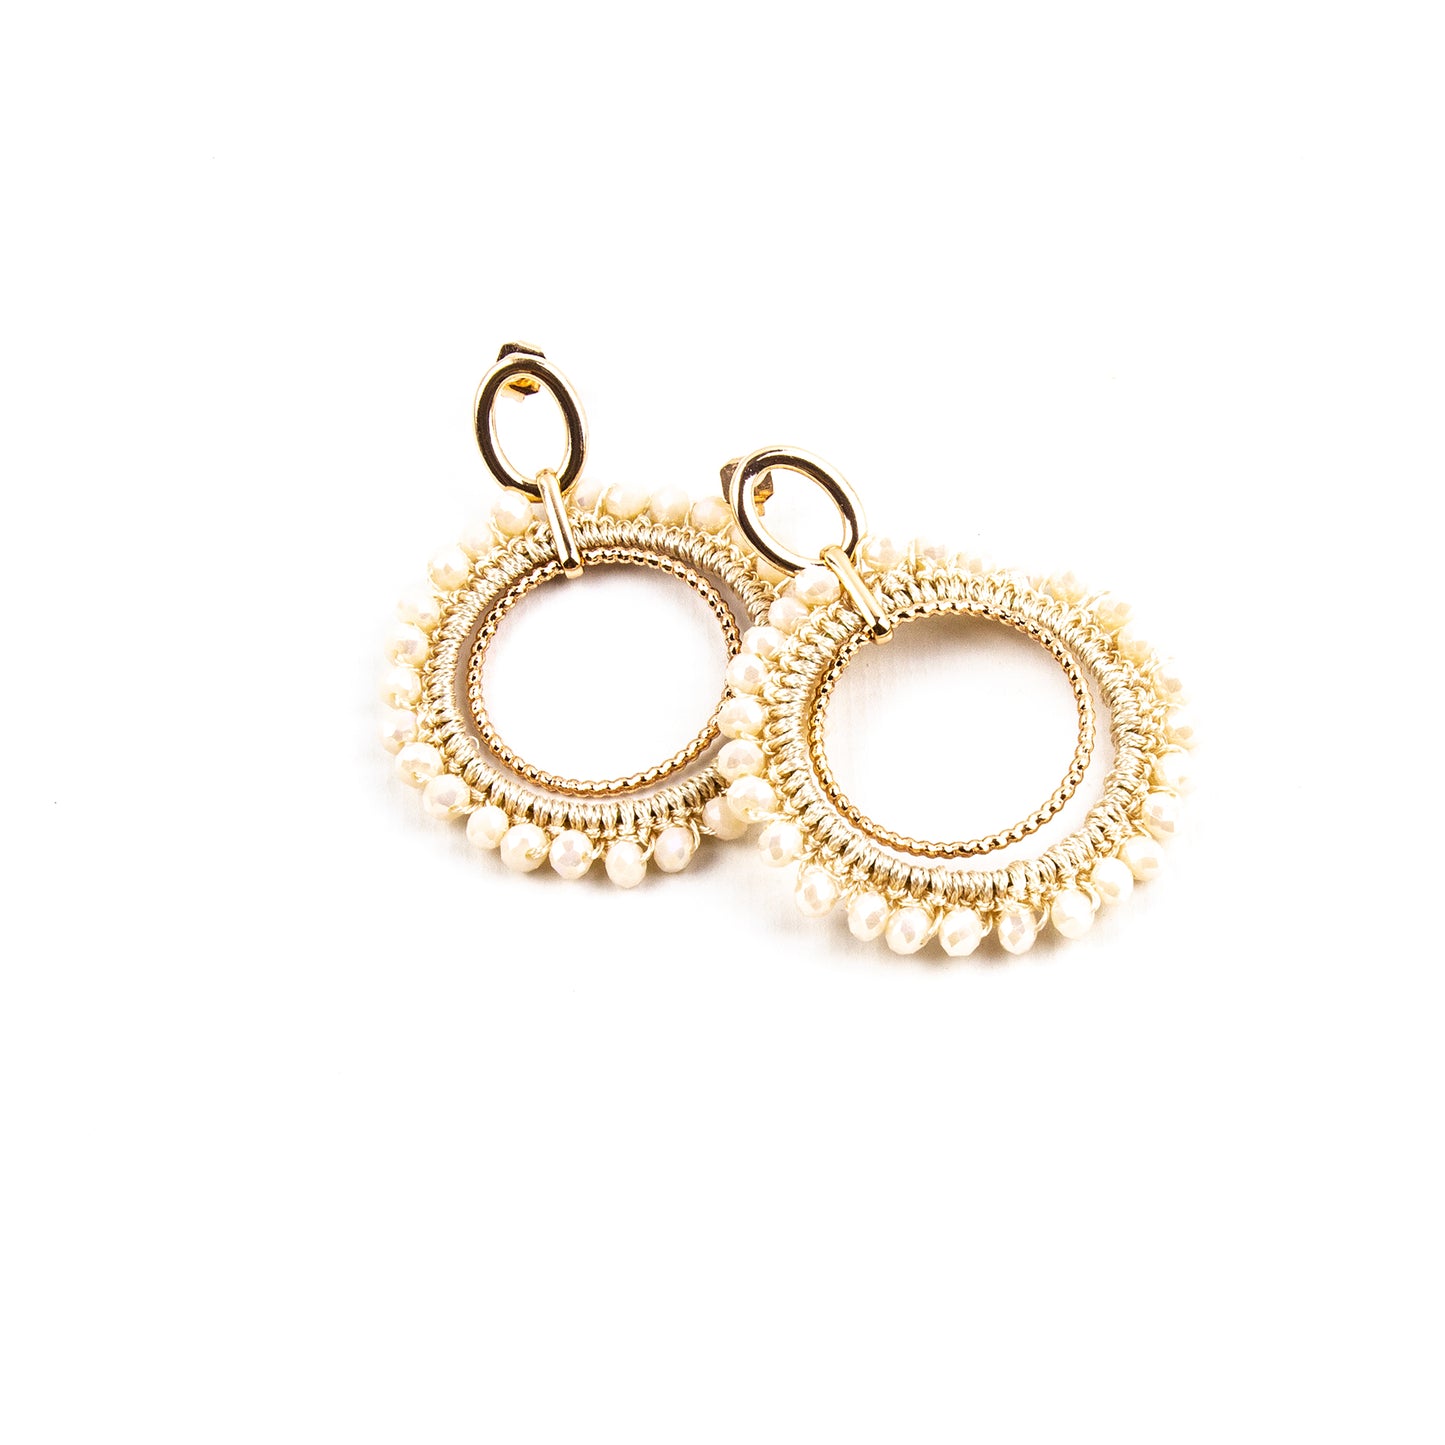 Versailles earrings